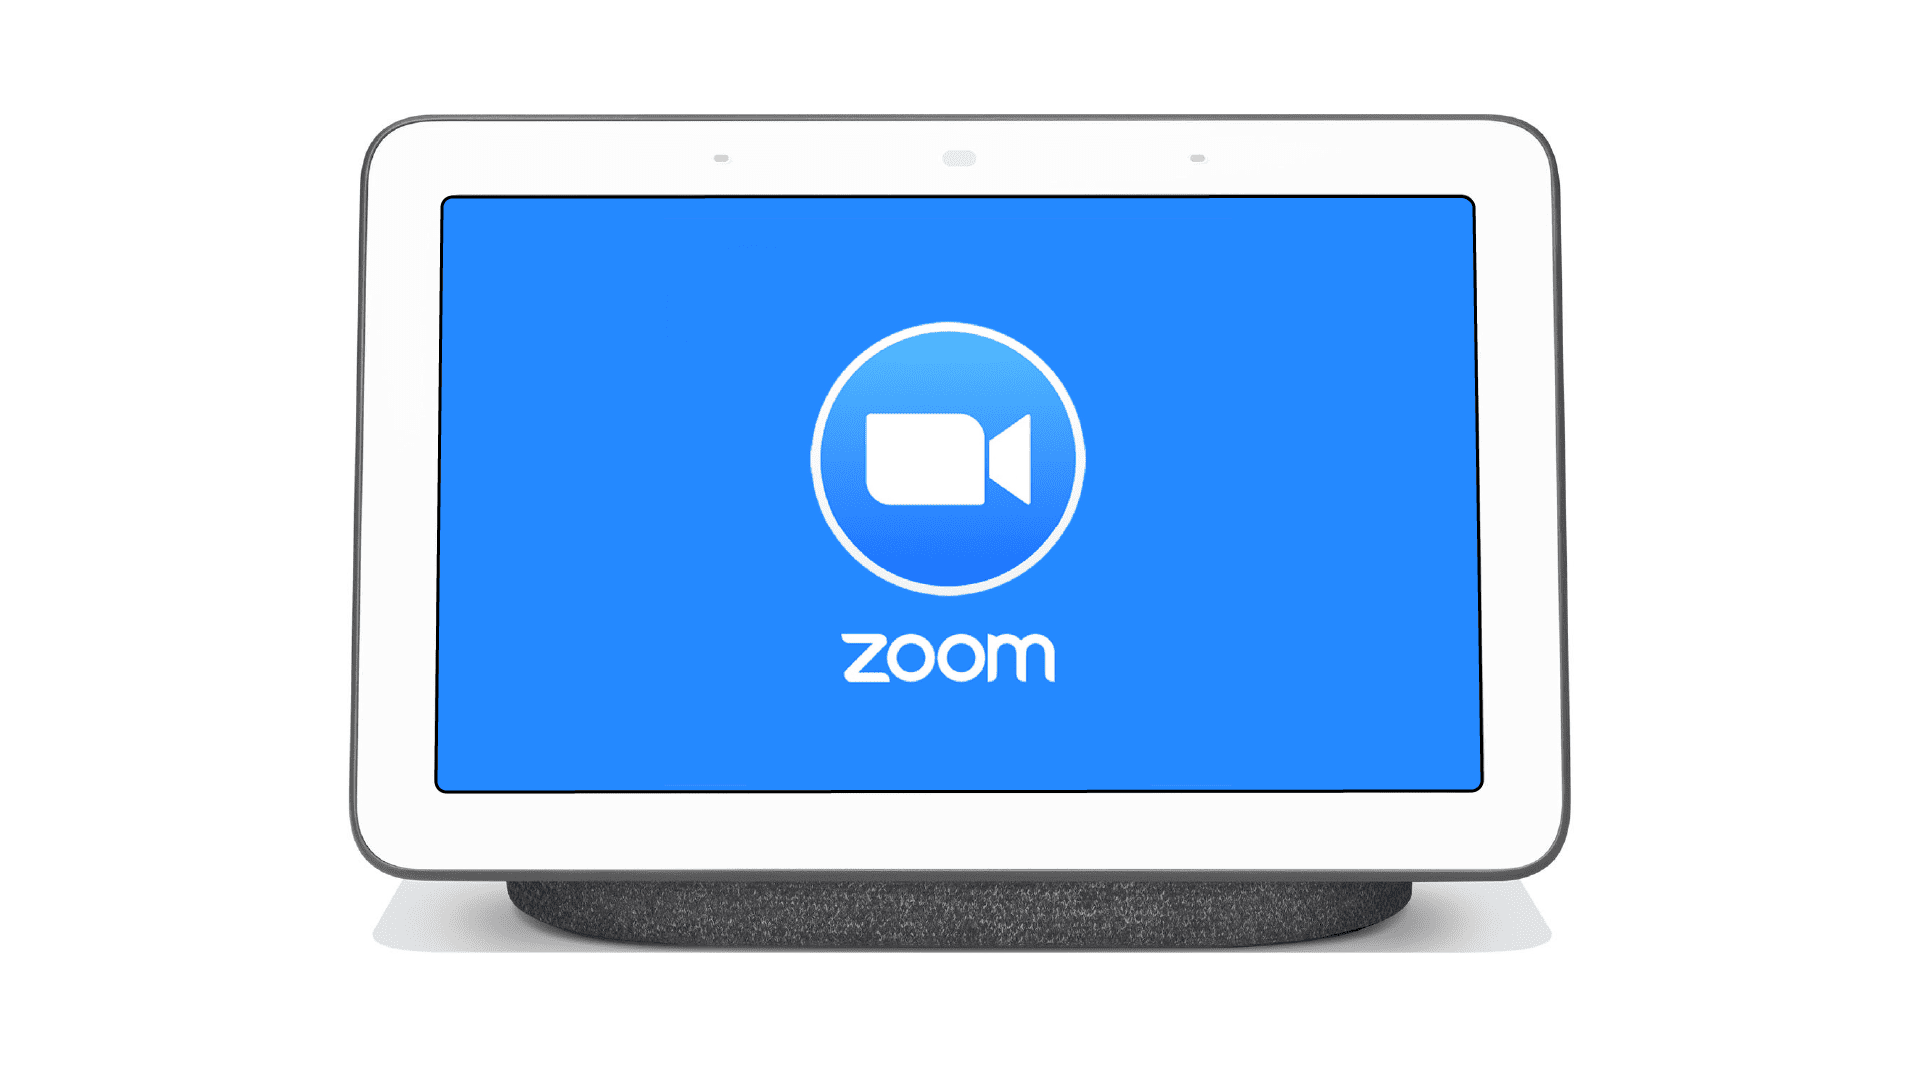 Zoom kommt zu Smart Displays von Amazon, Facebook, und Google später in diesem Jahr 67